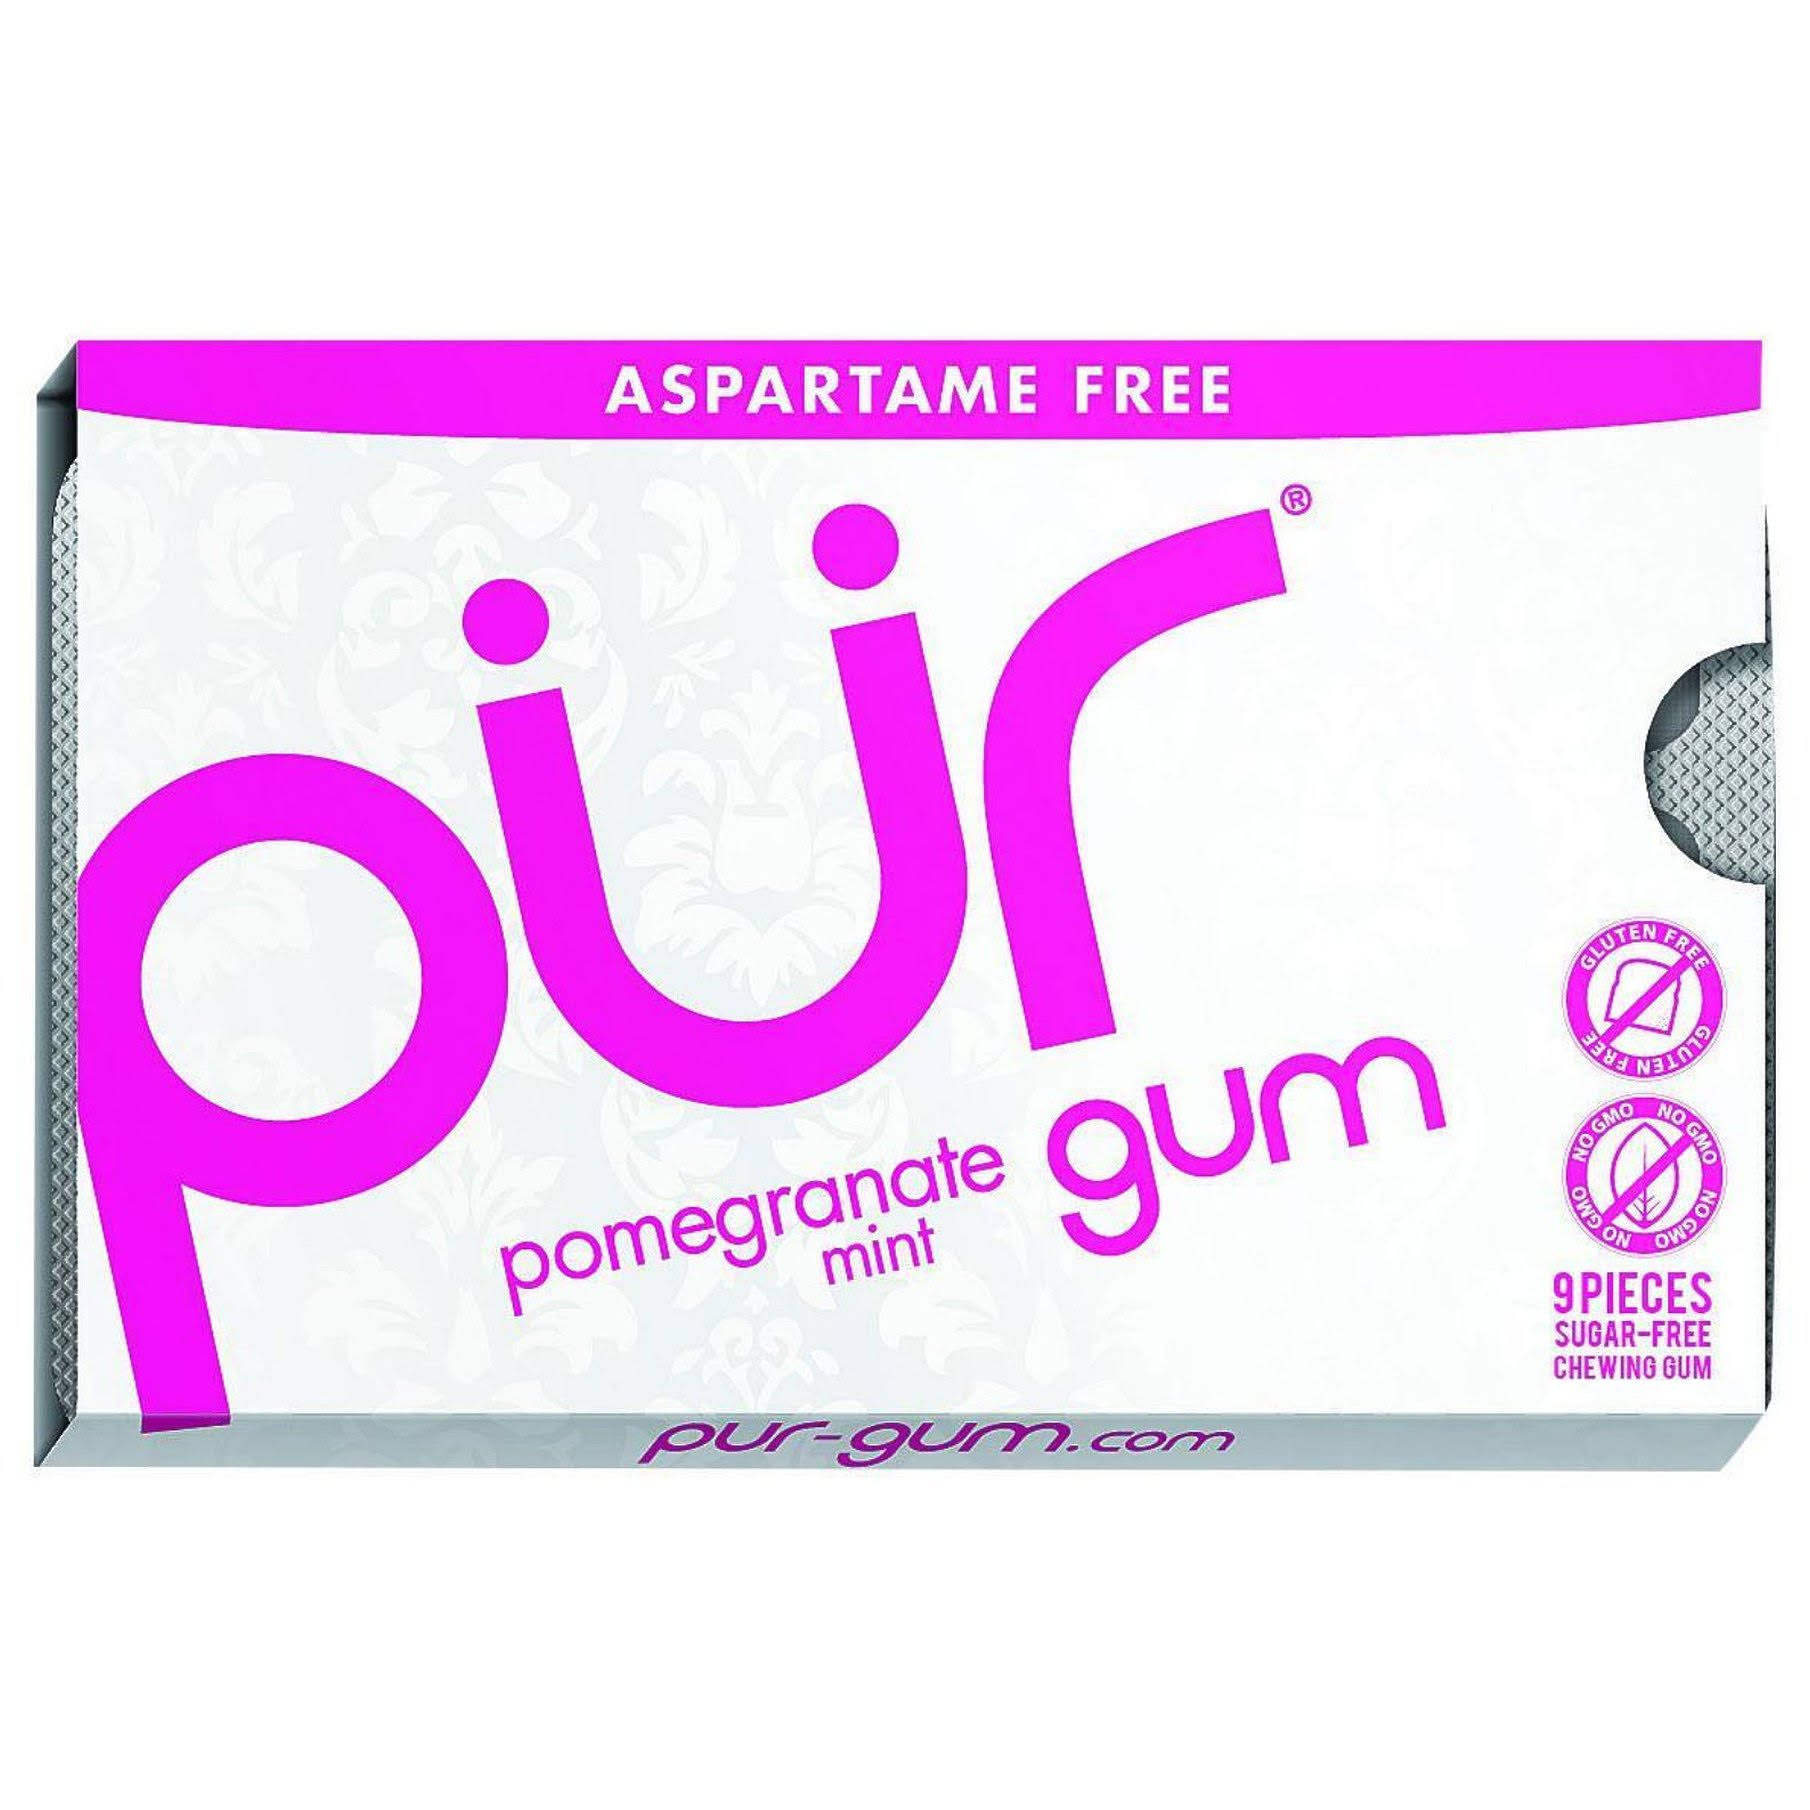 Pur Gum - Pomegranate Mint, 9pcs